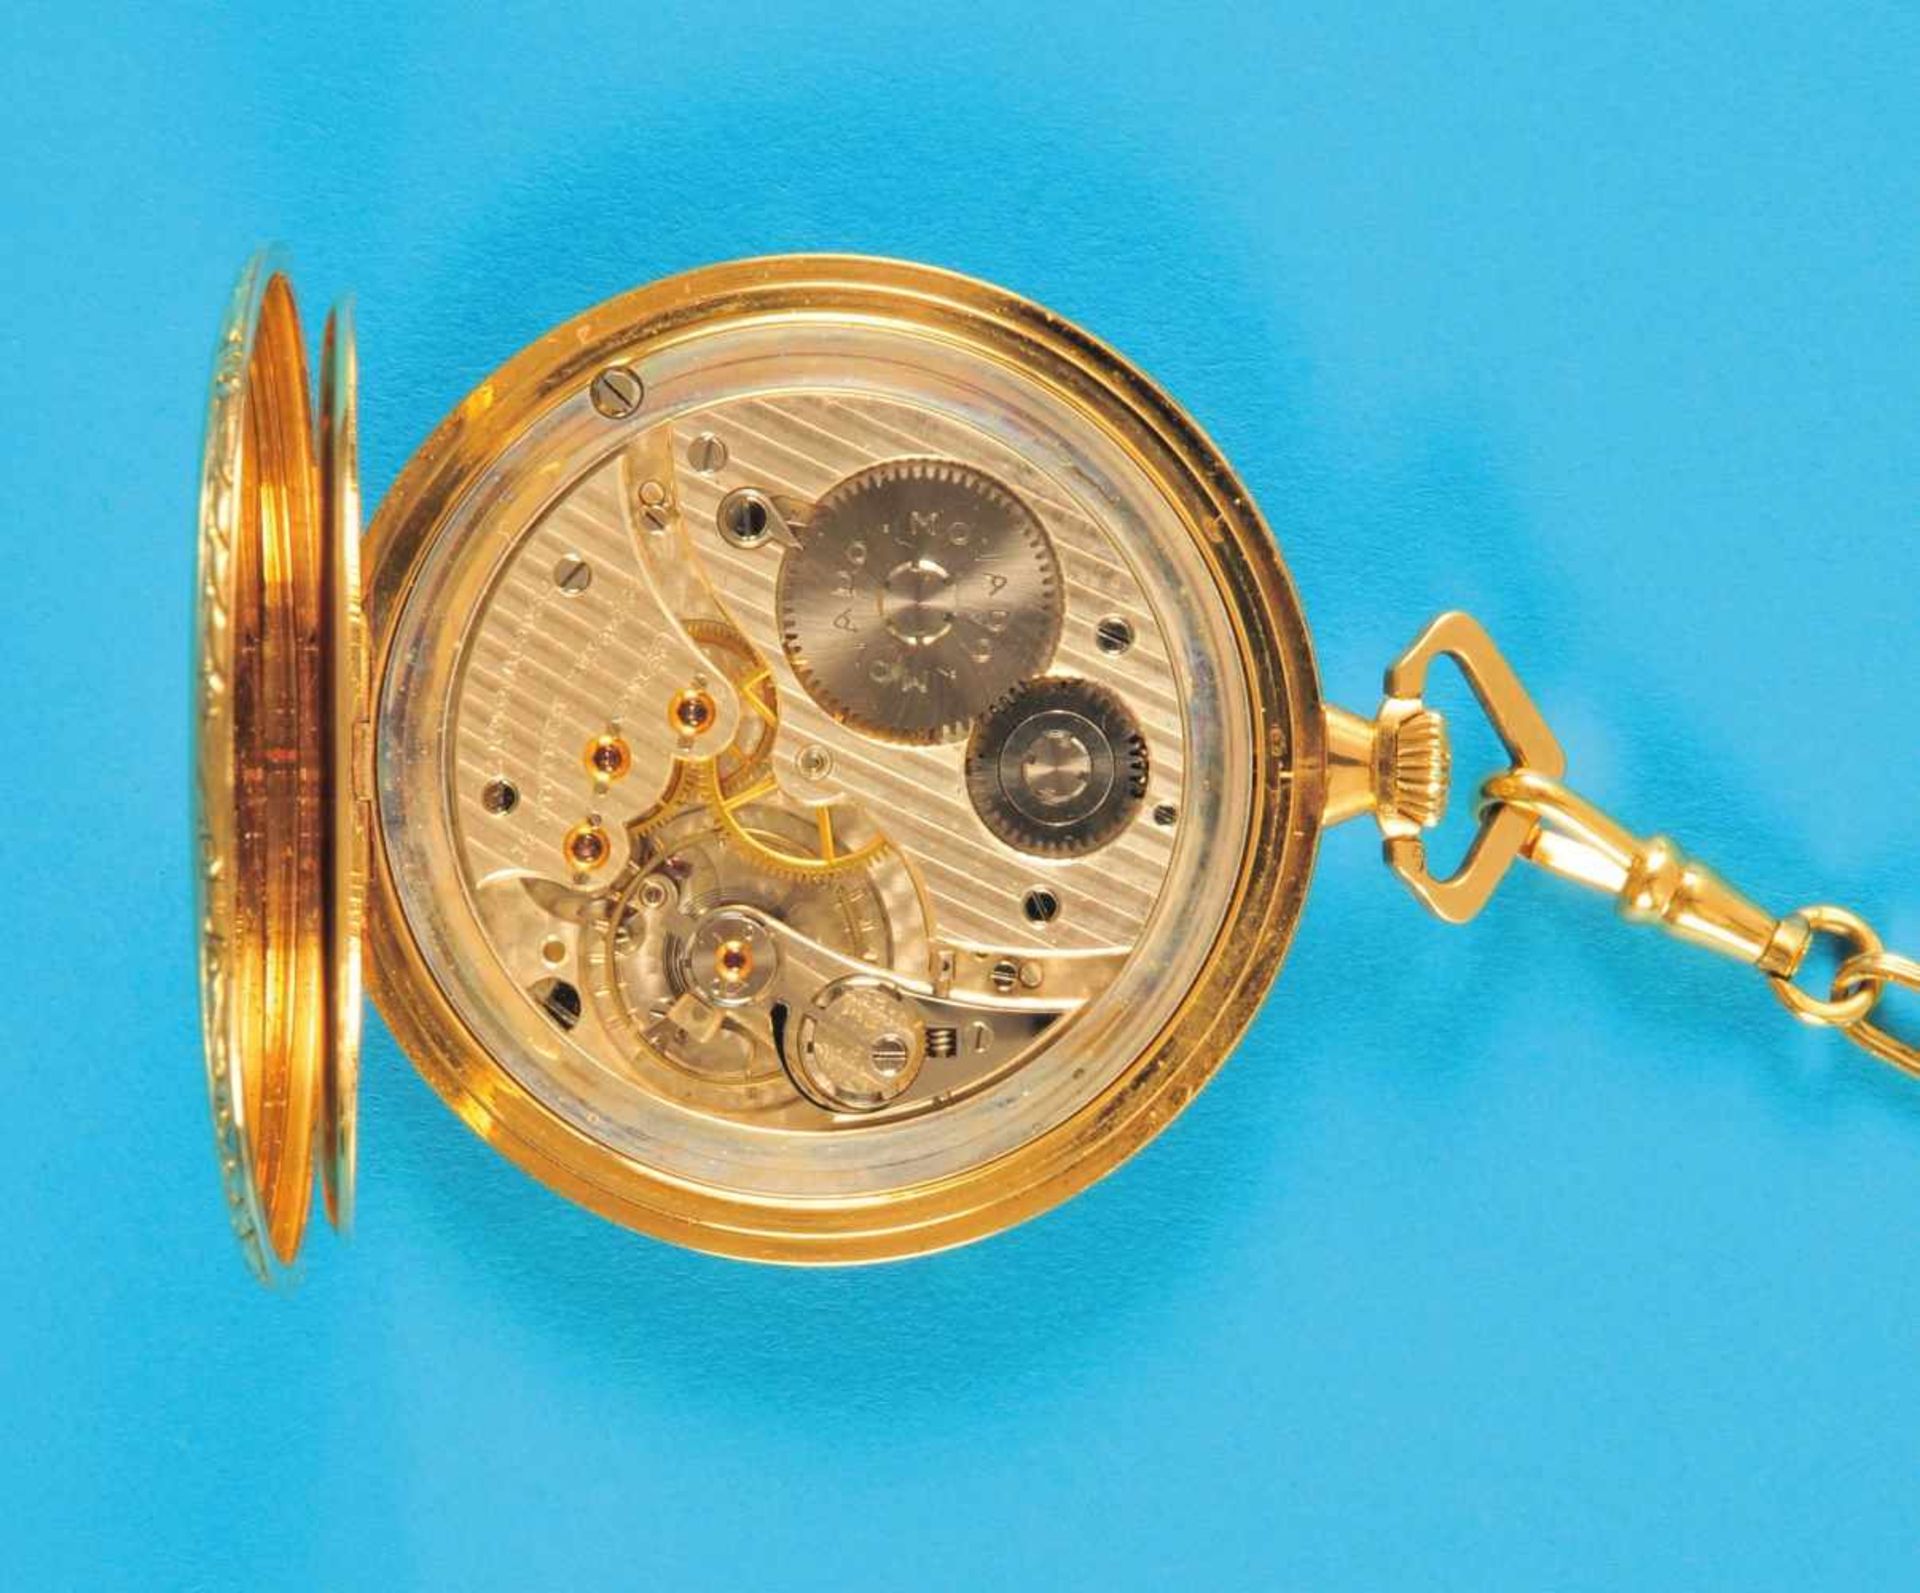 Golden tailcoat watch, MovadoGoldene Frackuhr mit 18-ct.-Goldchatelaine und Anhänger, Movado,